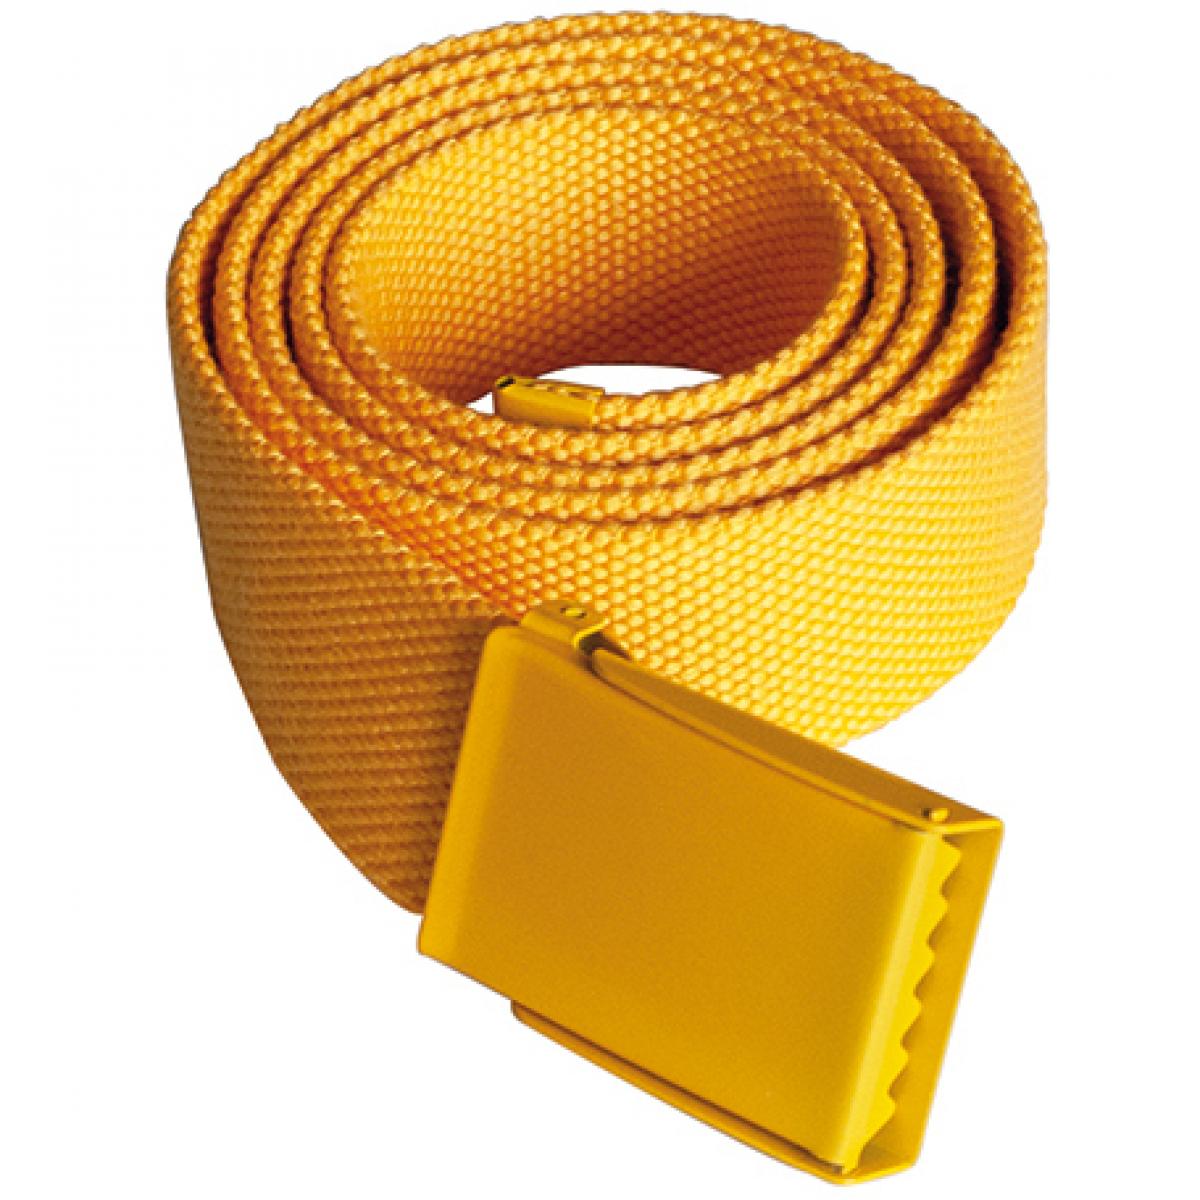 Hersteller: Korntex Herstellernummer: KXPYB Artikelbezeichnung: Polyestergürtel, Breite: 4 cm, Länge inkl. Schnalle: 130 cm Farbe: Yellow